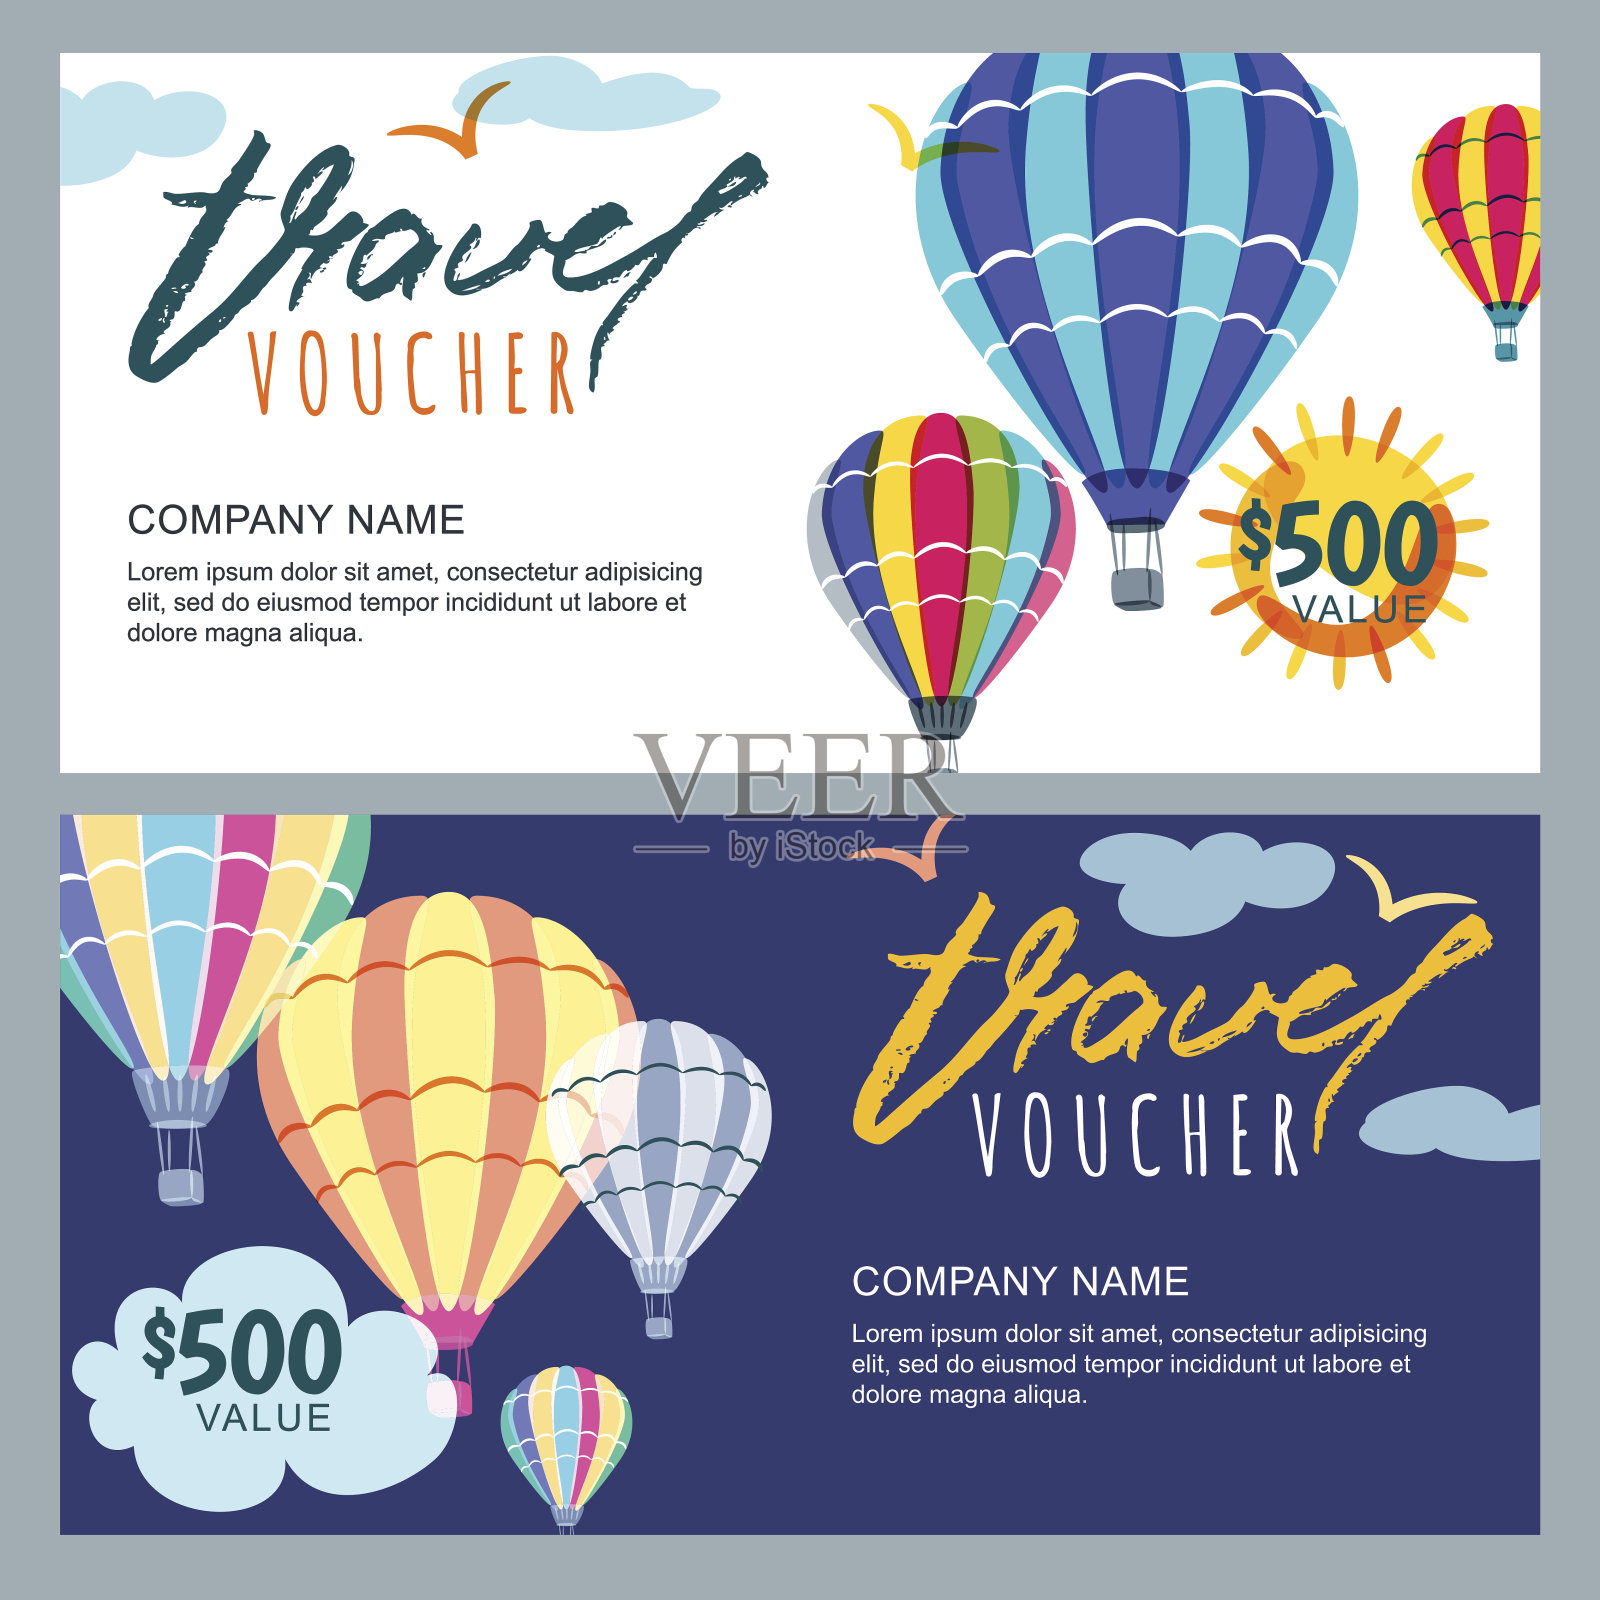 矢量礼品旅游券模板。天空中五颜六色的热气球。为旅行社和销售机票的概念。设计模板素材